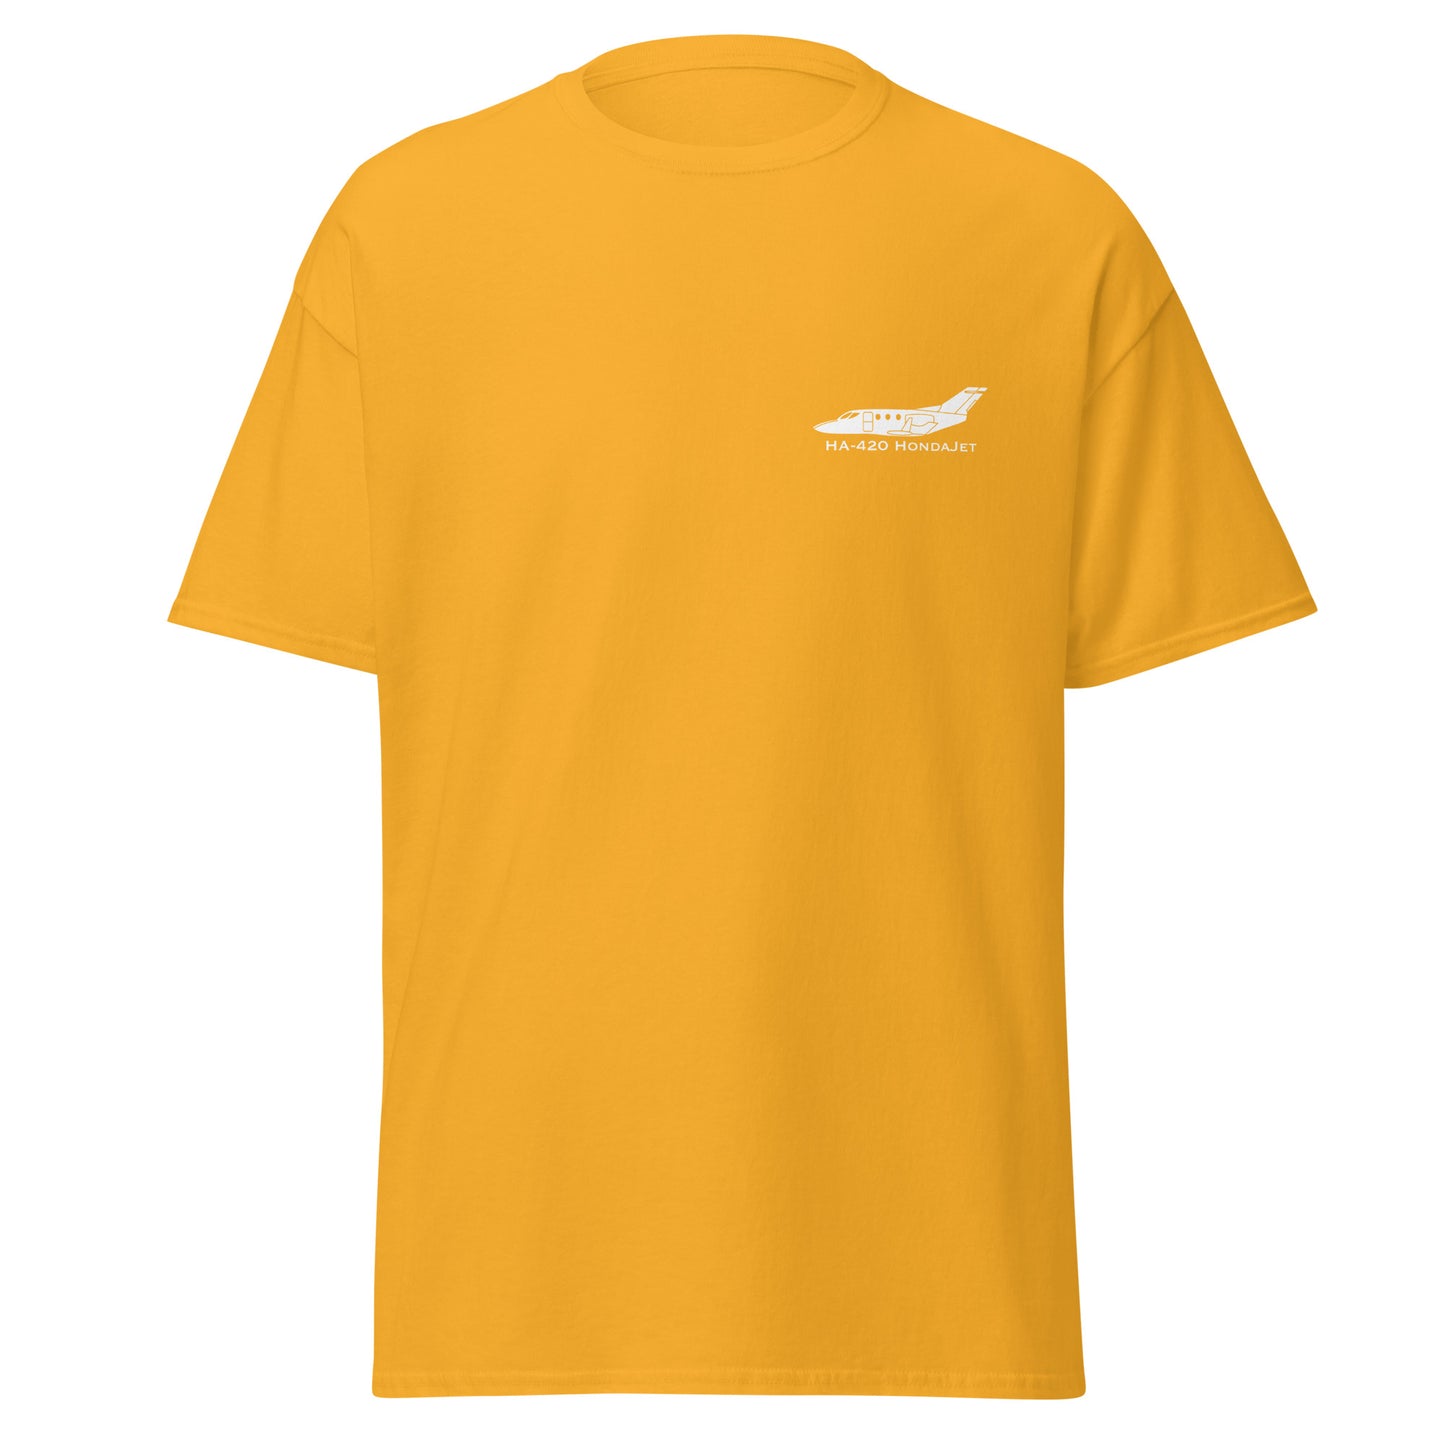 HondaJet HA-420 Airplane Unisex T-Shirt